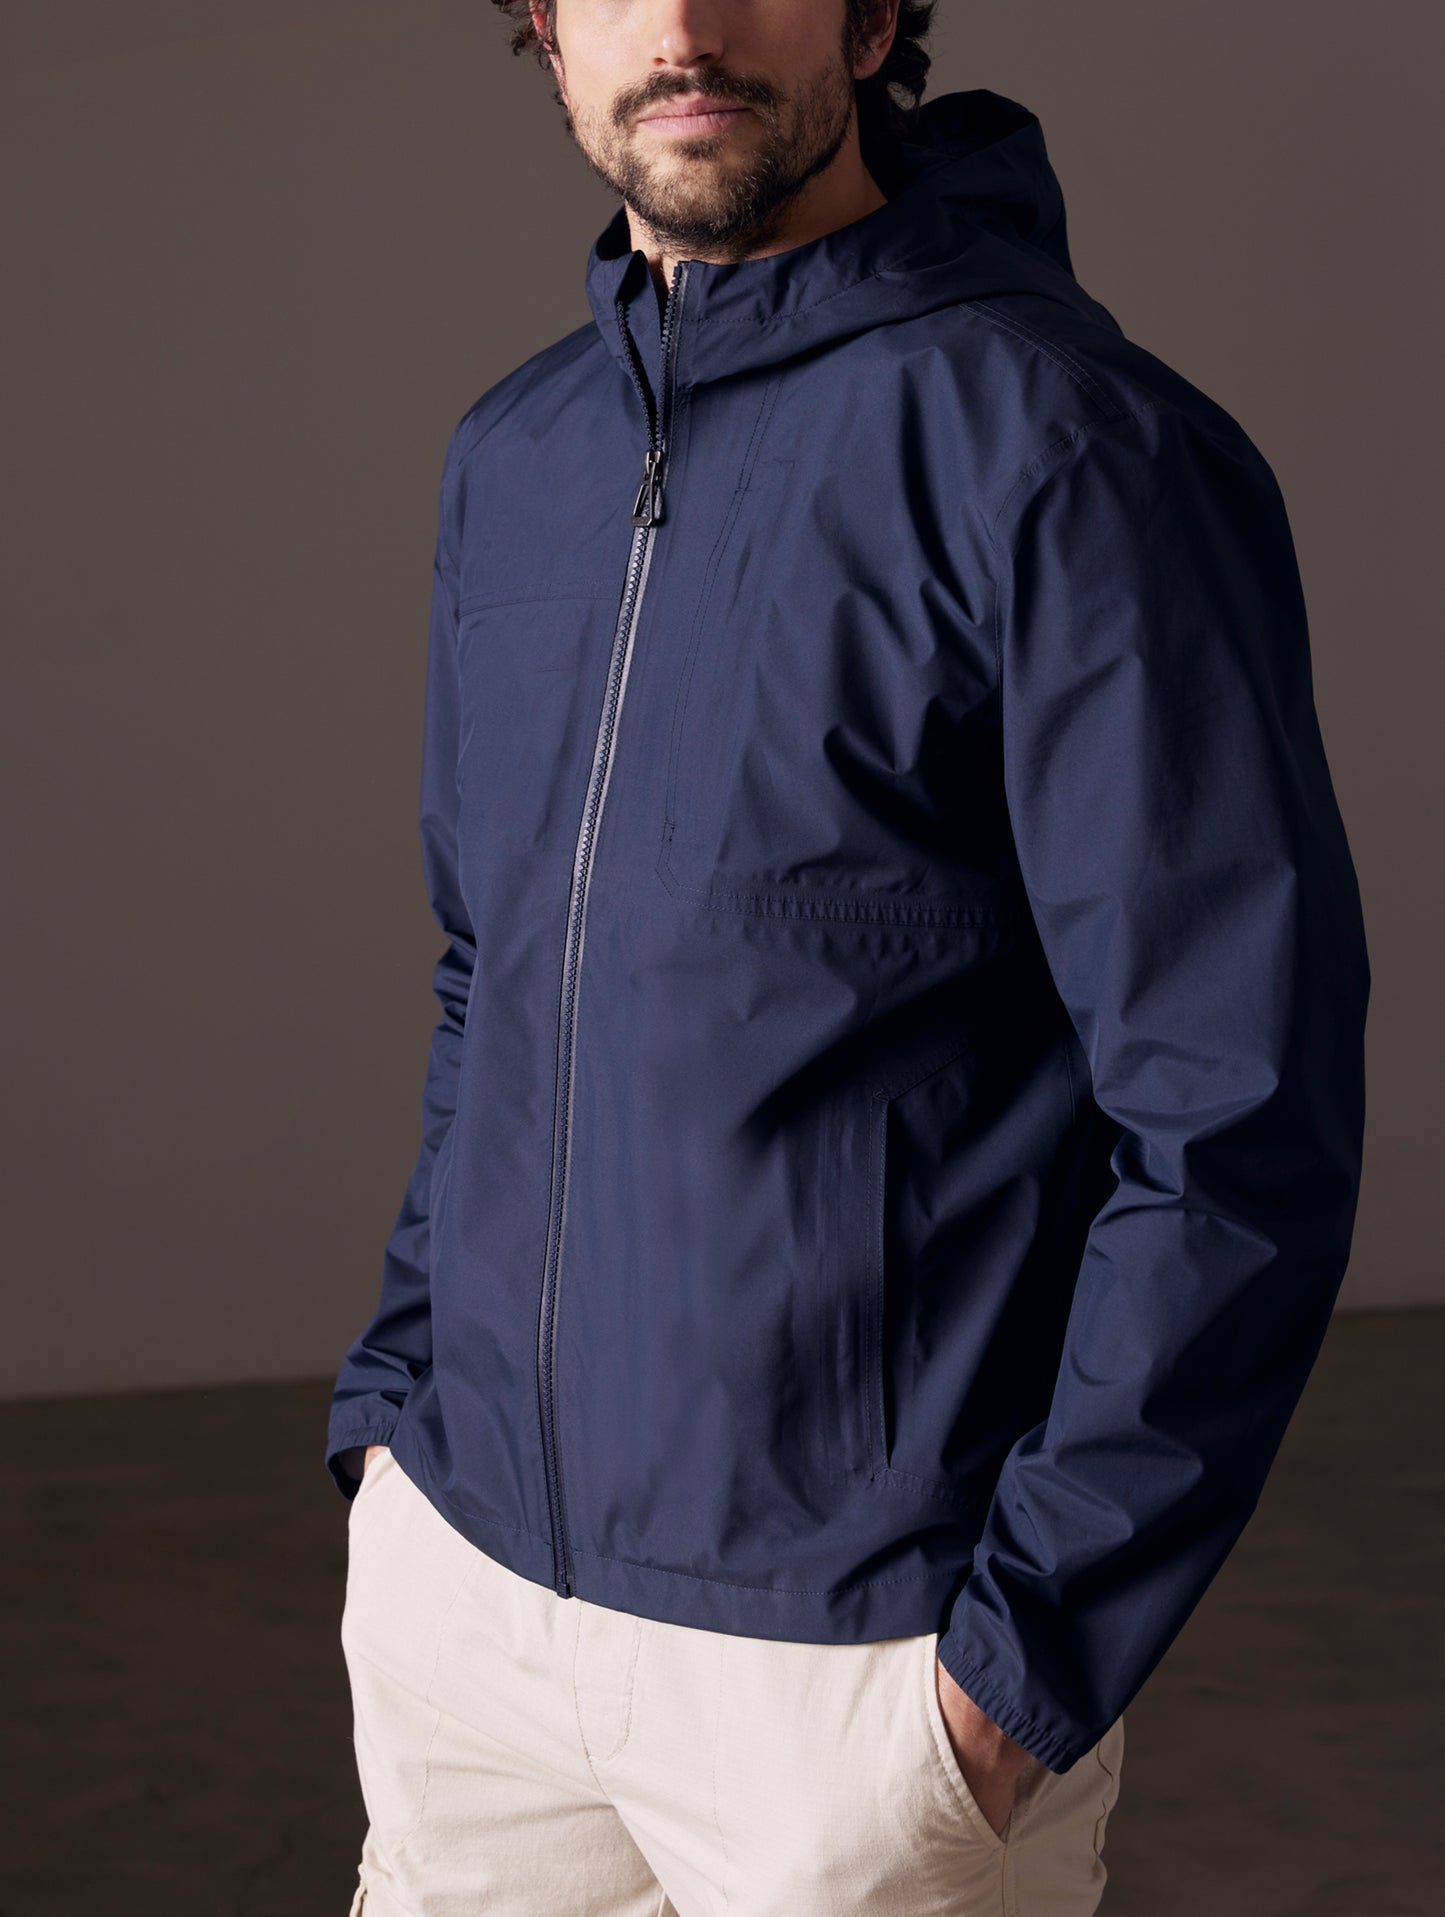 man wearing blue waterproof jacket